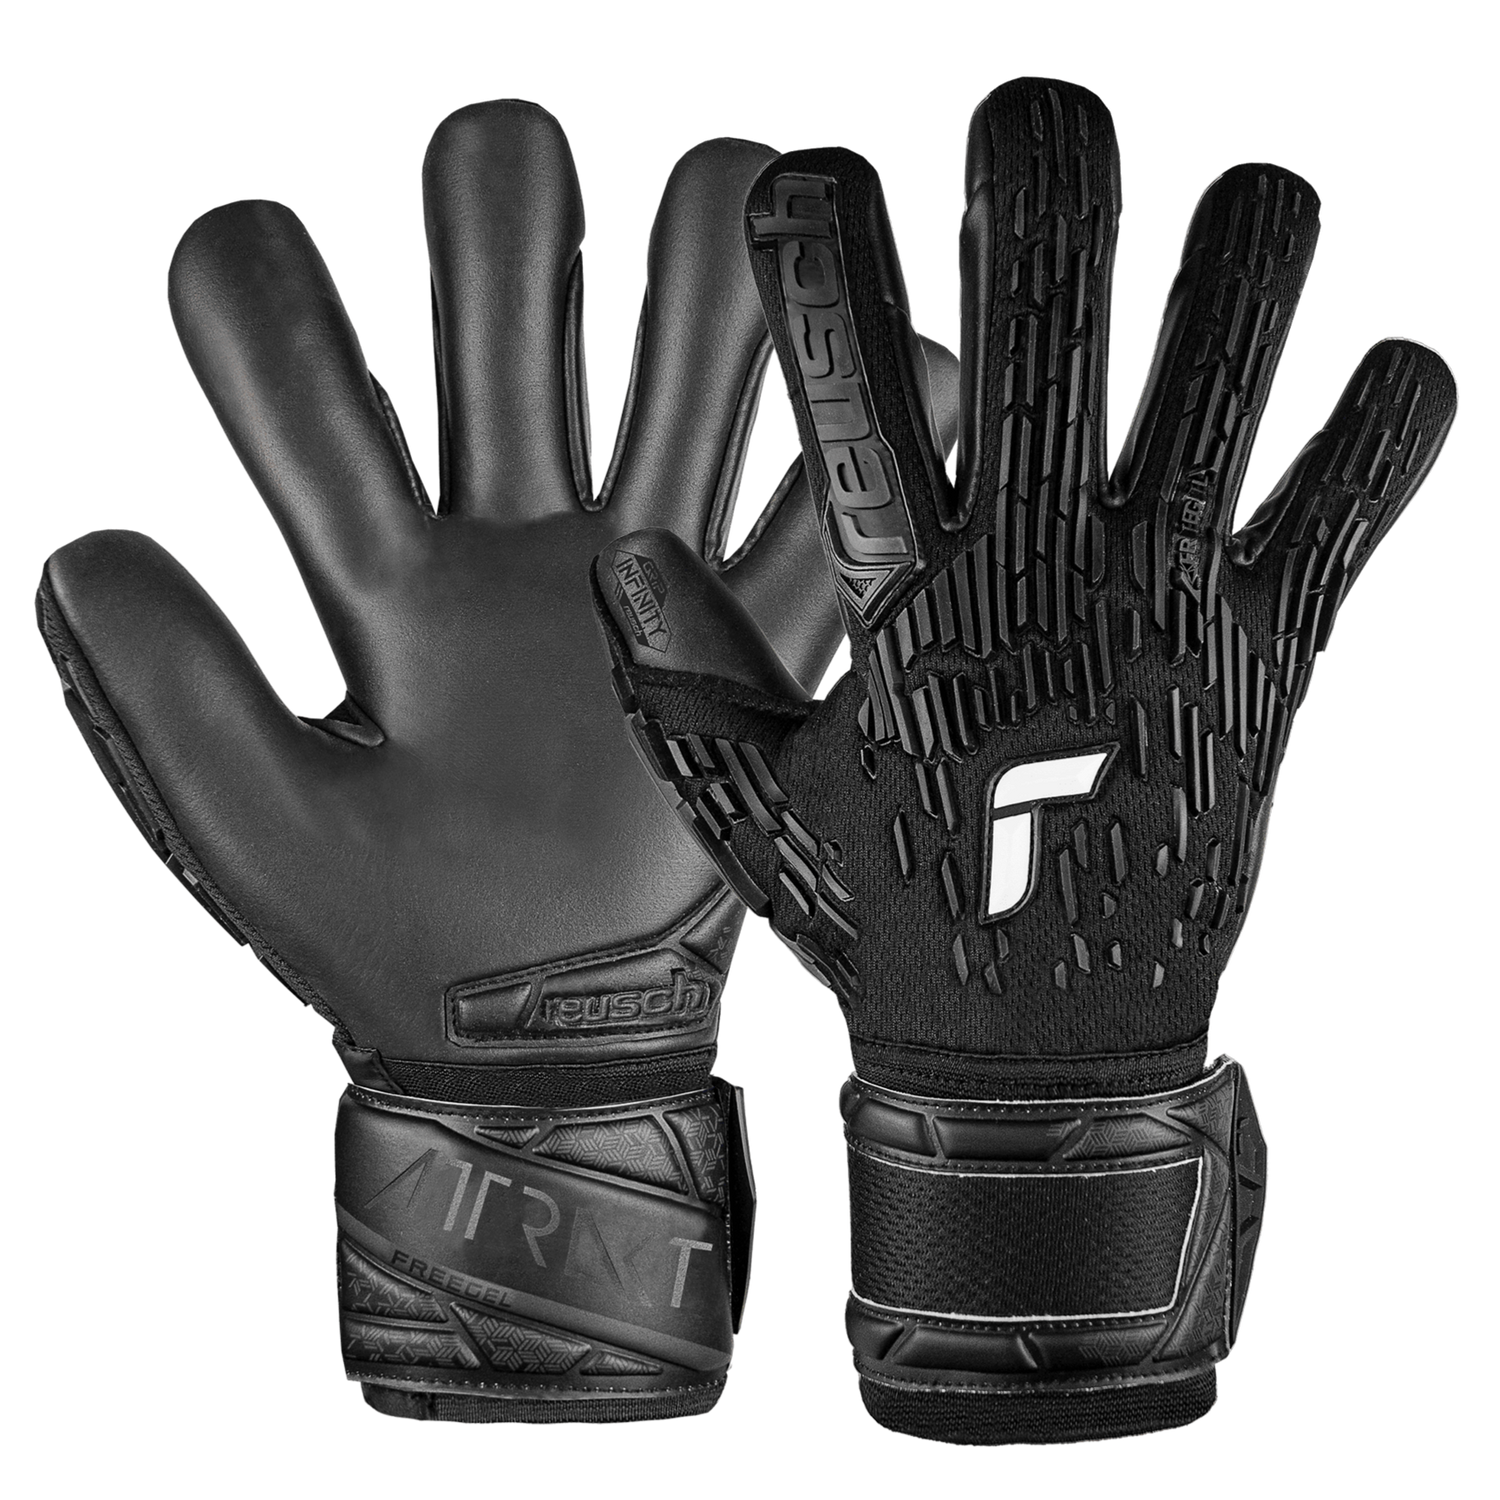 Reusch Attrakt Freegel Infinity Goalkeeper Gloves (Set)